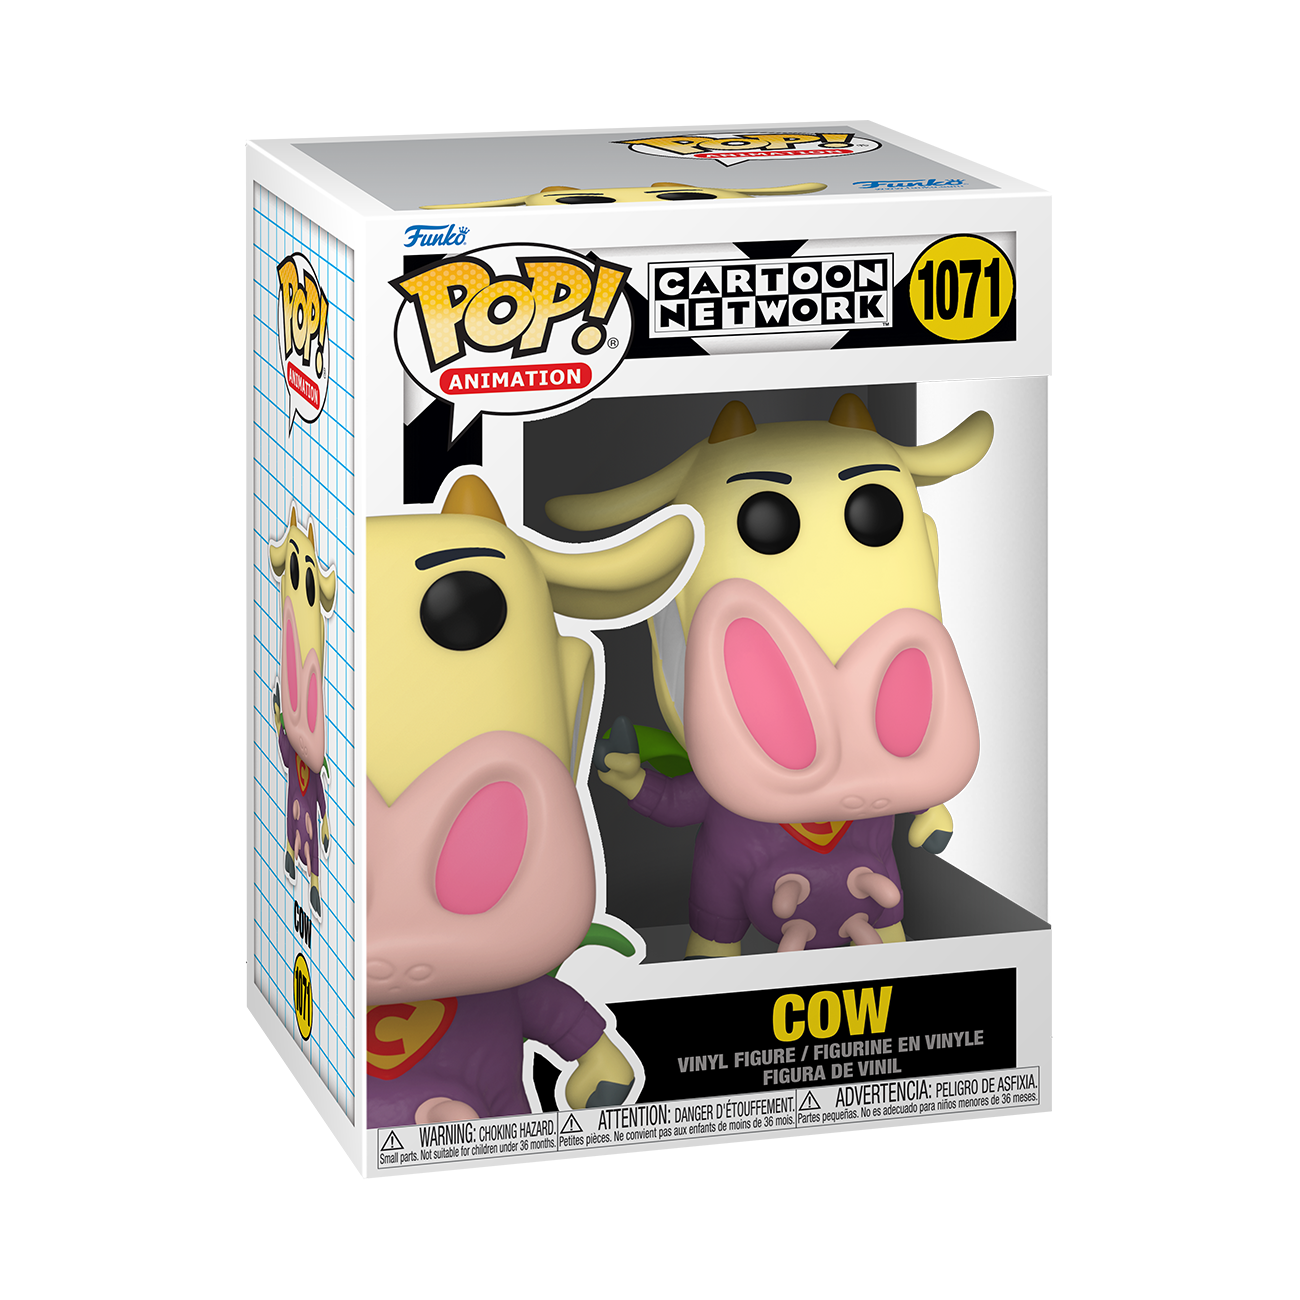 Cow & Chicken Funko Pop! Super Cow